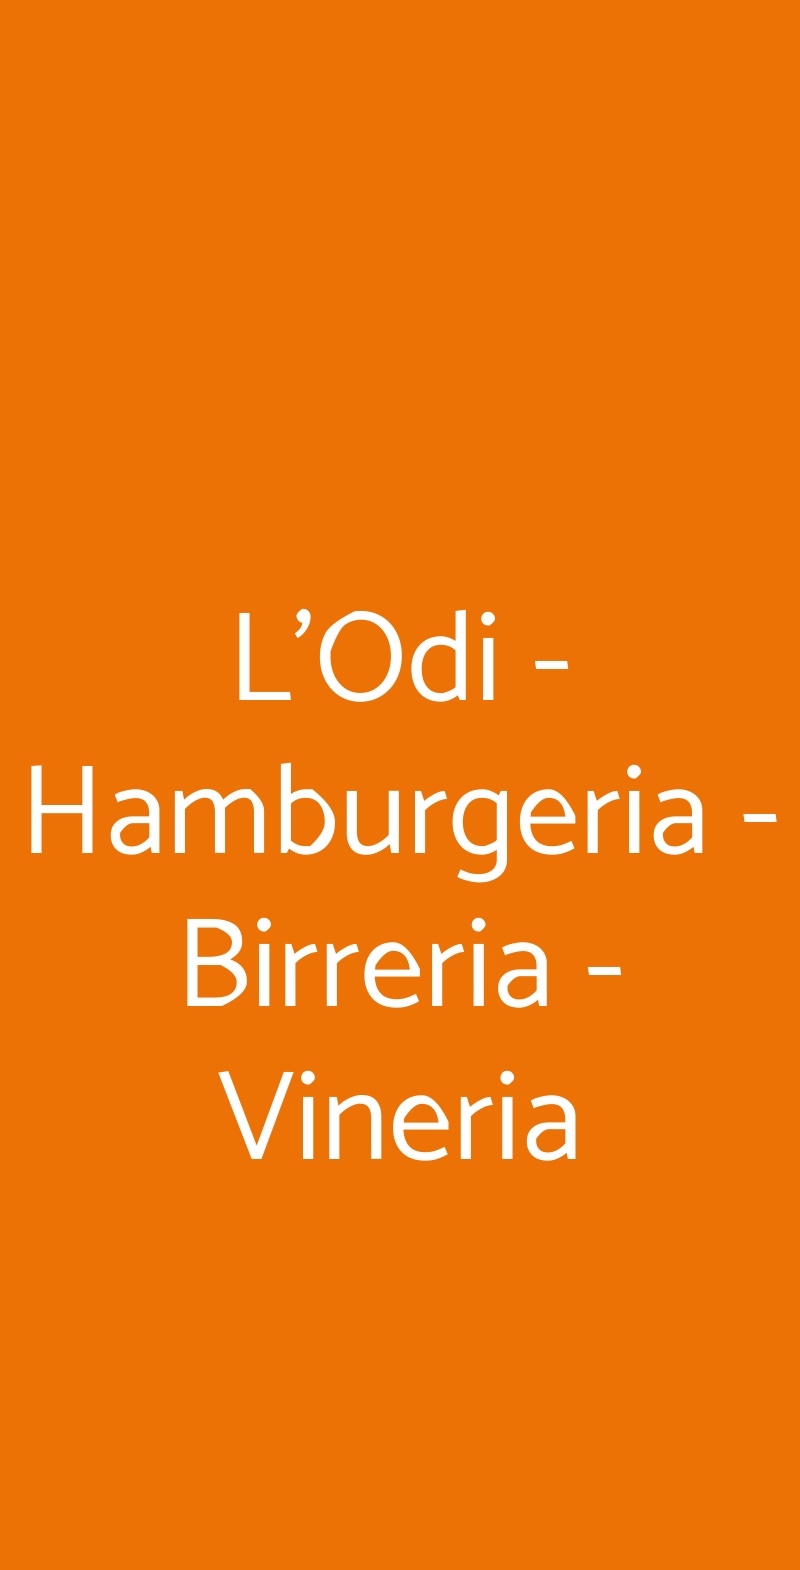 L'Odi - Hamburgeria - Birreria - Vineria Milano menù 1 pagina